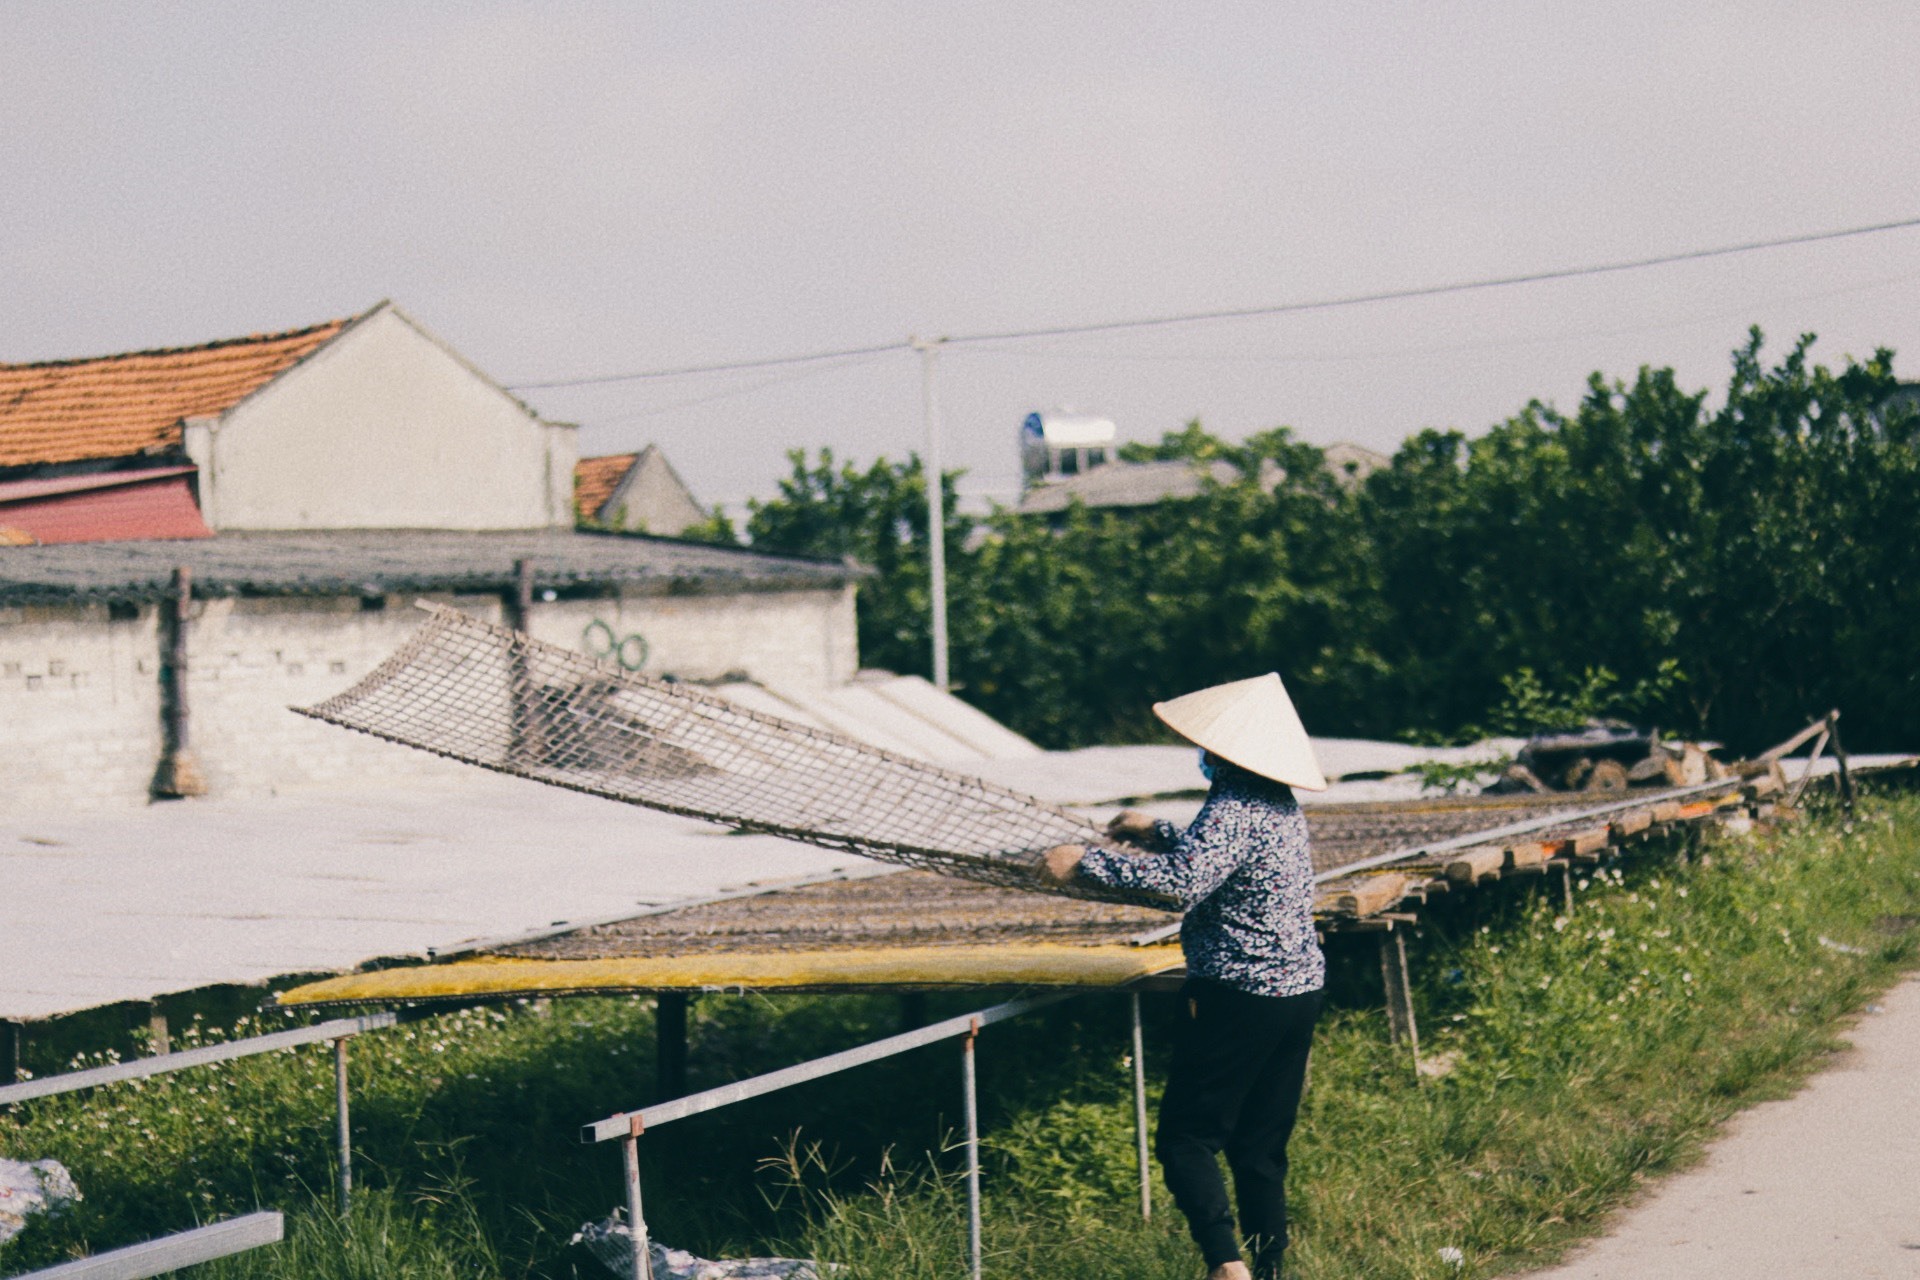 Lục Ngạn (Bắc Giang) không chỉ được biết đến là “vương quốc vải thiều”, mà còn có nghề thủ công truyền thống nổi tiếng với sản phẩm mỳ Chũ đã được Cục Sở hữu trí tuệ (Bộ Khoa học và Công nghệ) cấp bằng chứng nhận nhãn hiệu độc quyền.